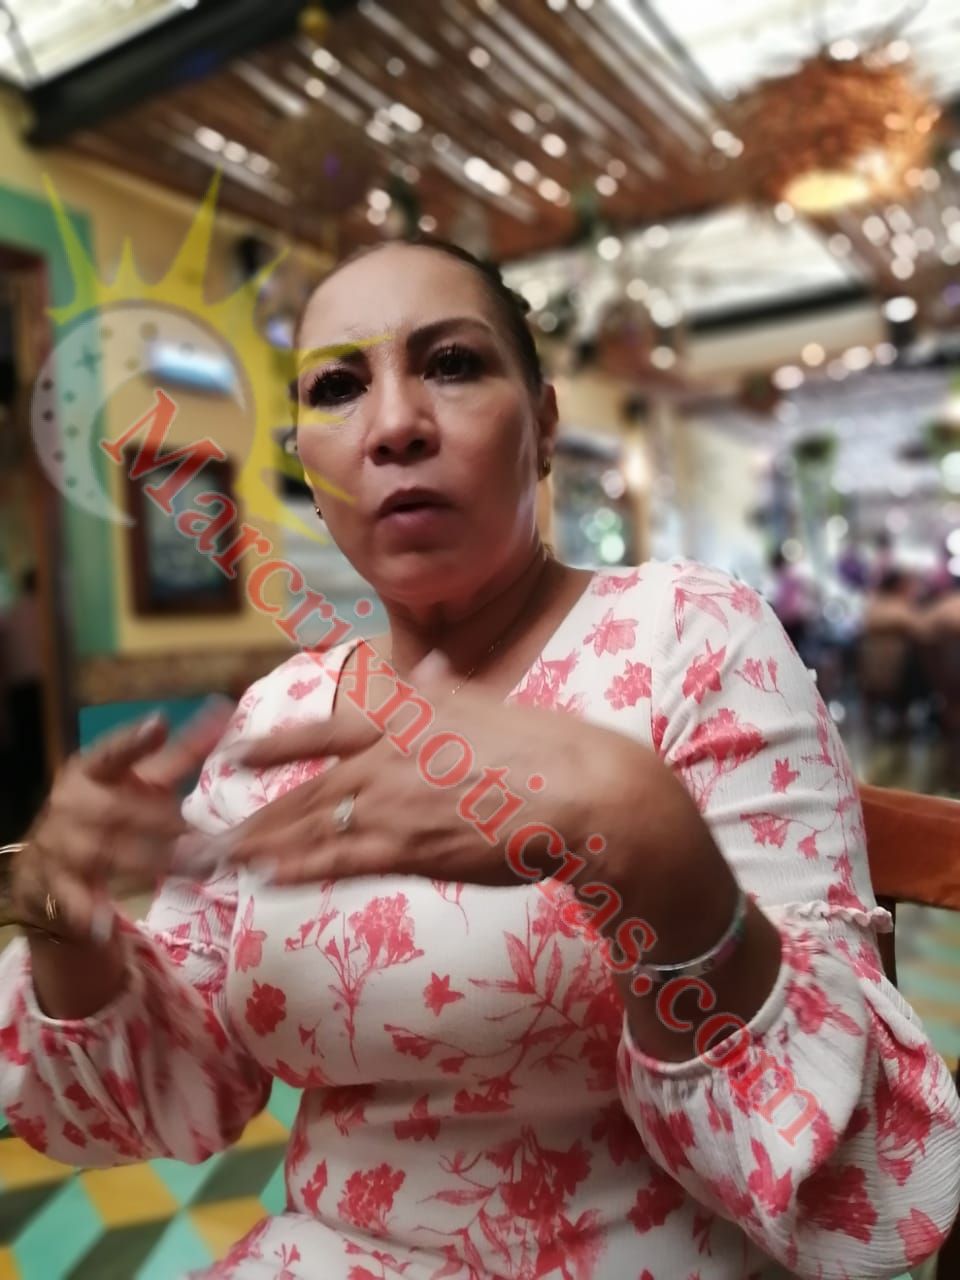 Marybel y Palazuelos sí son opción de Movimiento Ciudadano para la Gubernatura de Quintana Roo

